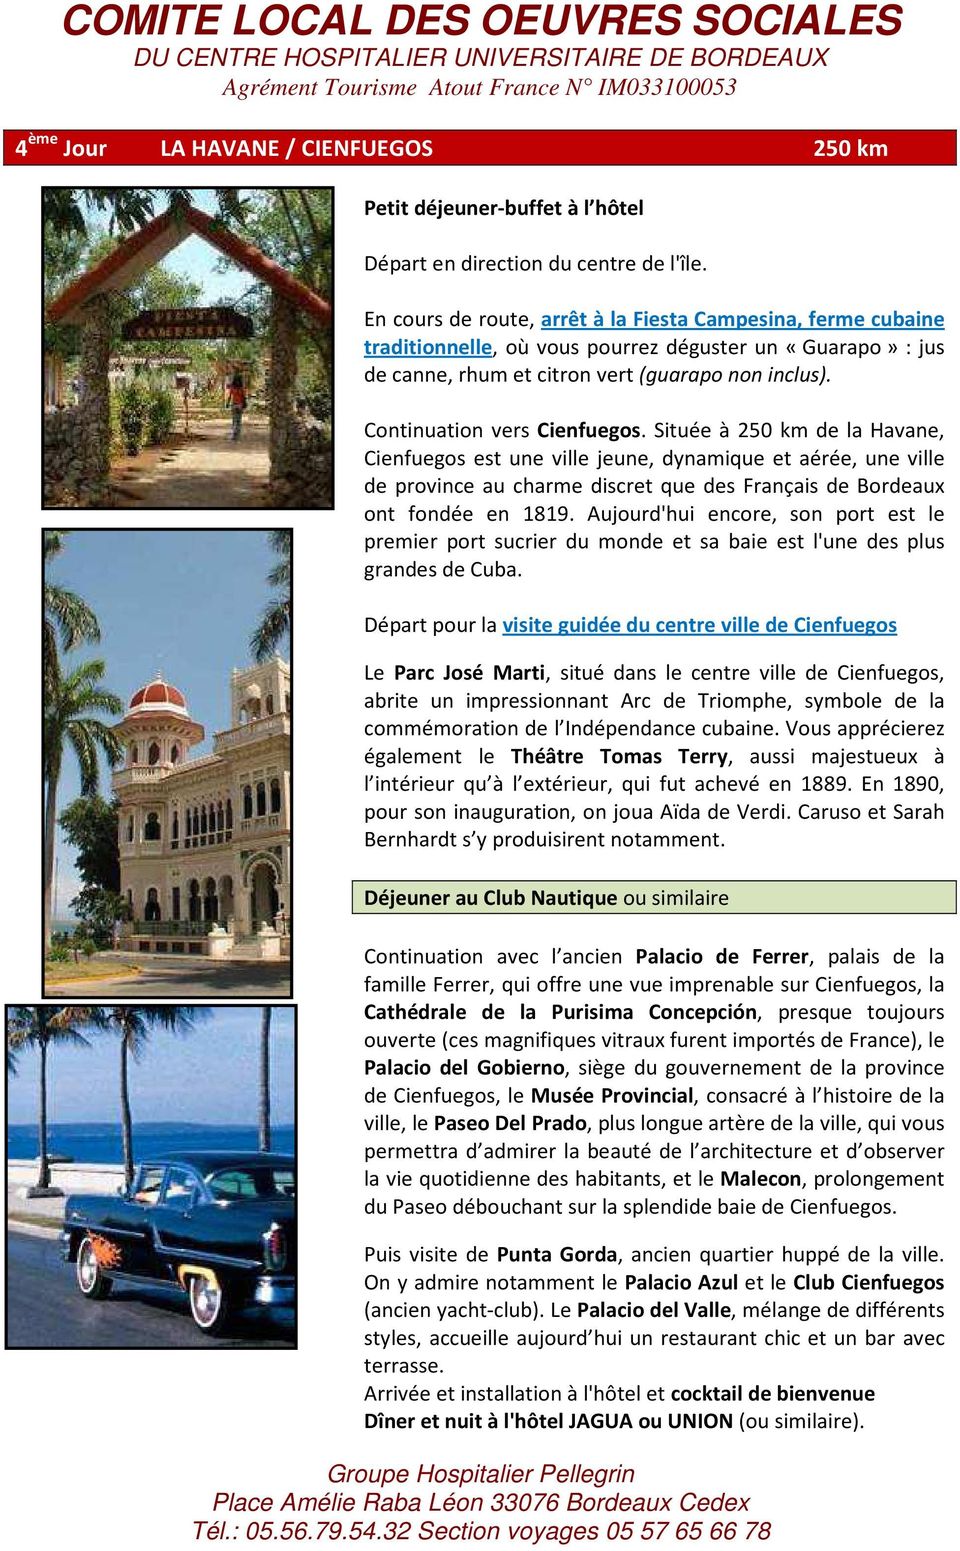 Continuation vers Cienfuegos. Située à 250 km de la Havane, Cienfuegos est une ville jeune, dynamique et aérée, une ville de province au charme discret que des Français de Bordeaux ont fondée en 1819.